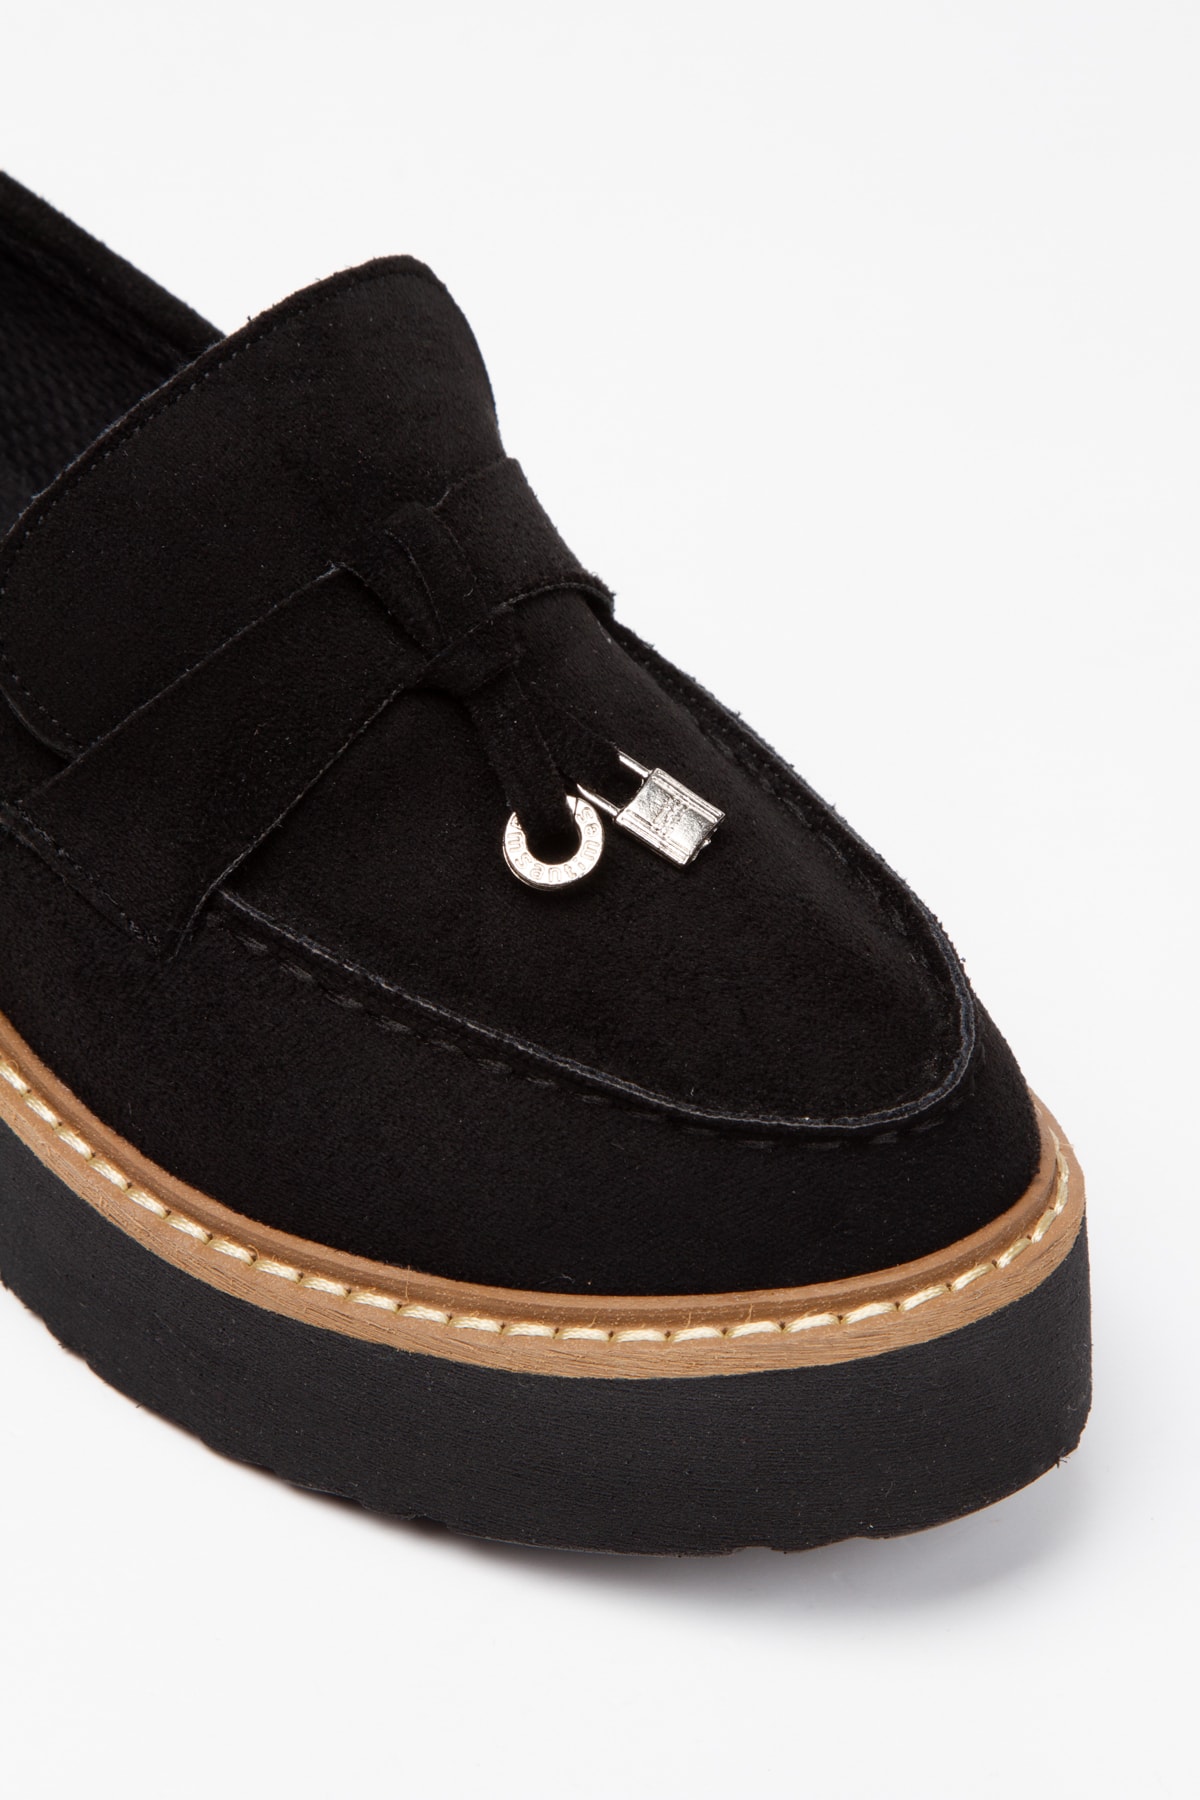 Limeo Siyah Süet Fiyonk Detaylı Yüksek Eva Tabanlı Kadın Günlük Makosen Loafer Ayakkabı ON11261